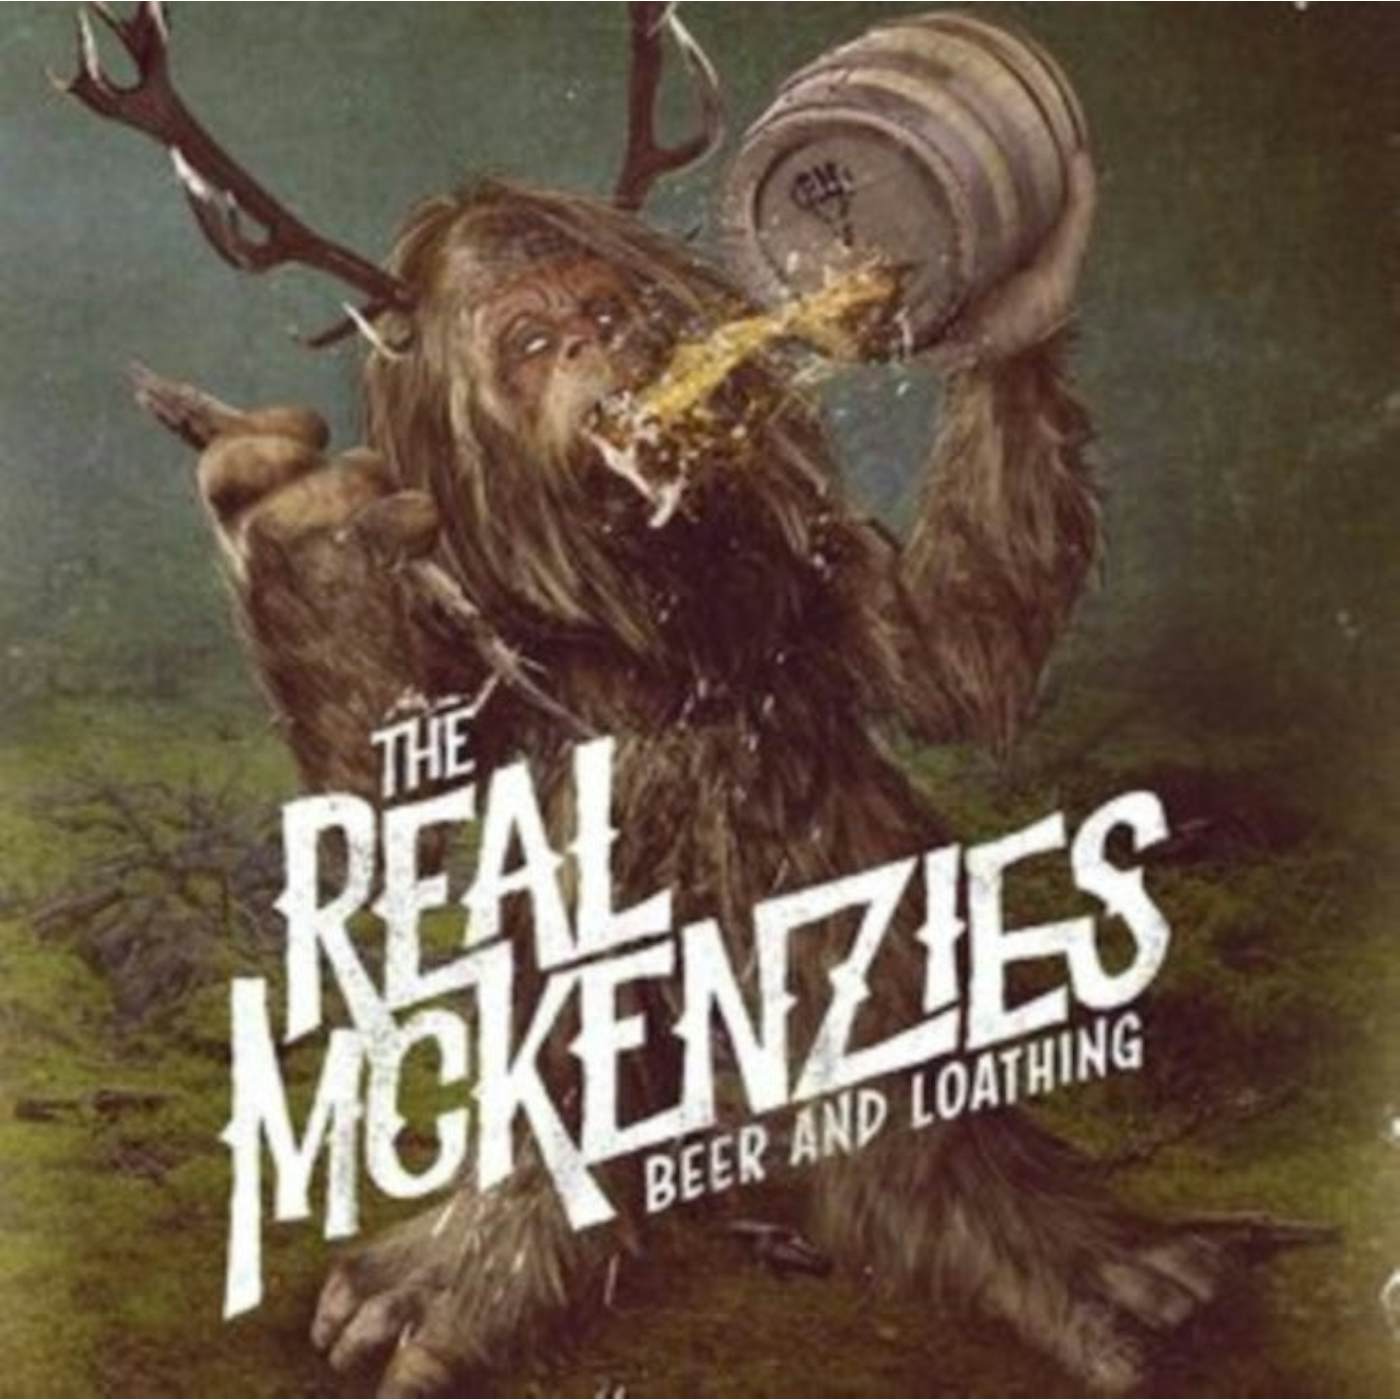 The Real Mckenzies LP - Beer And Loathing (Vinyl)